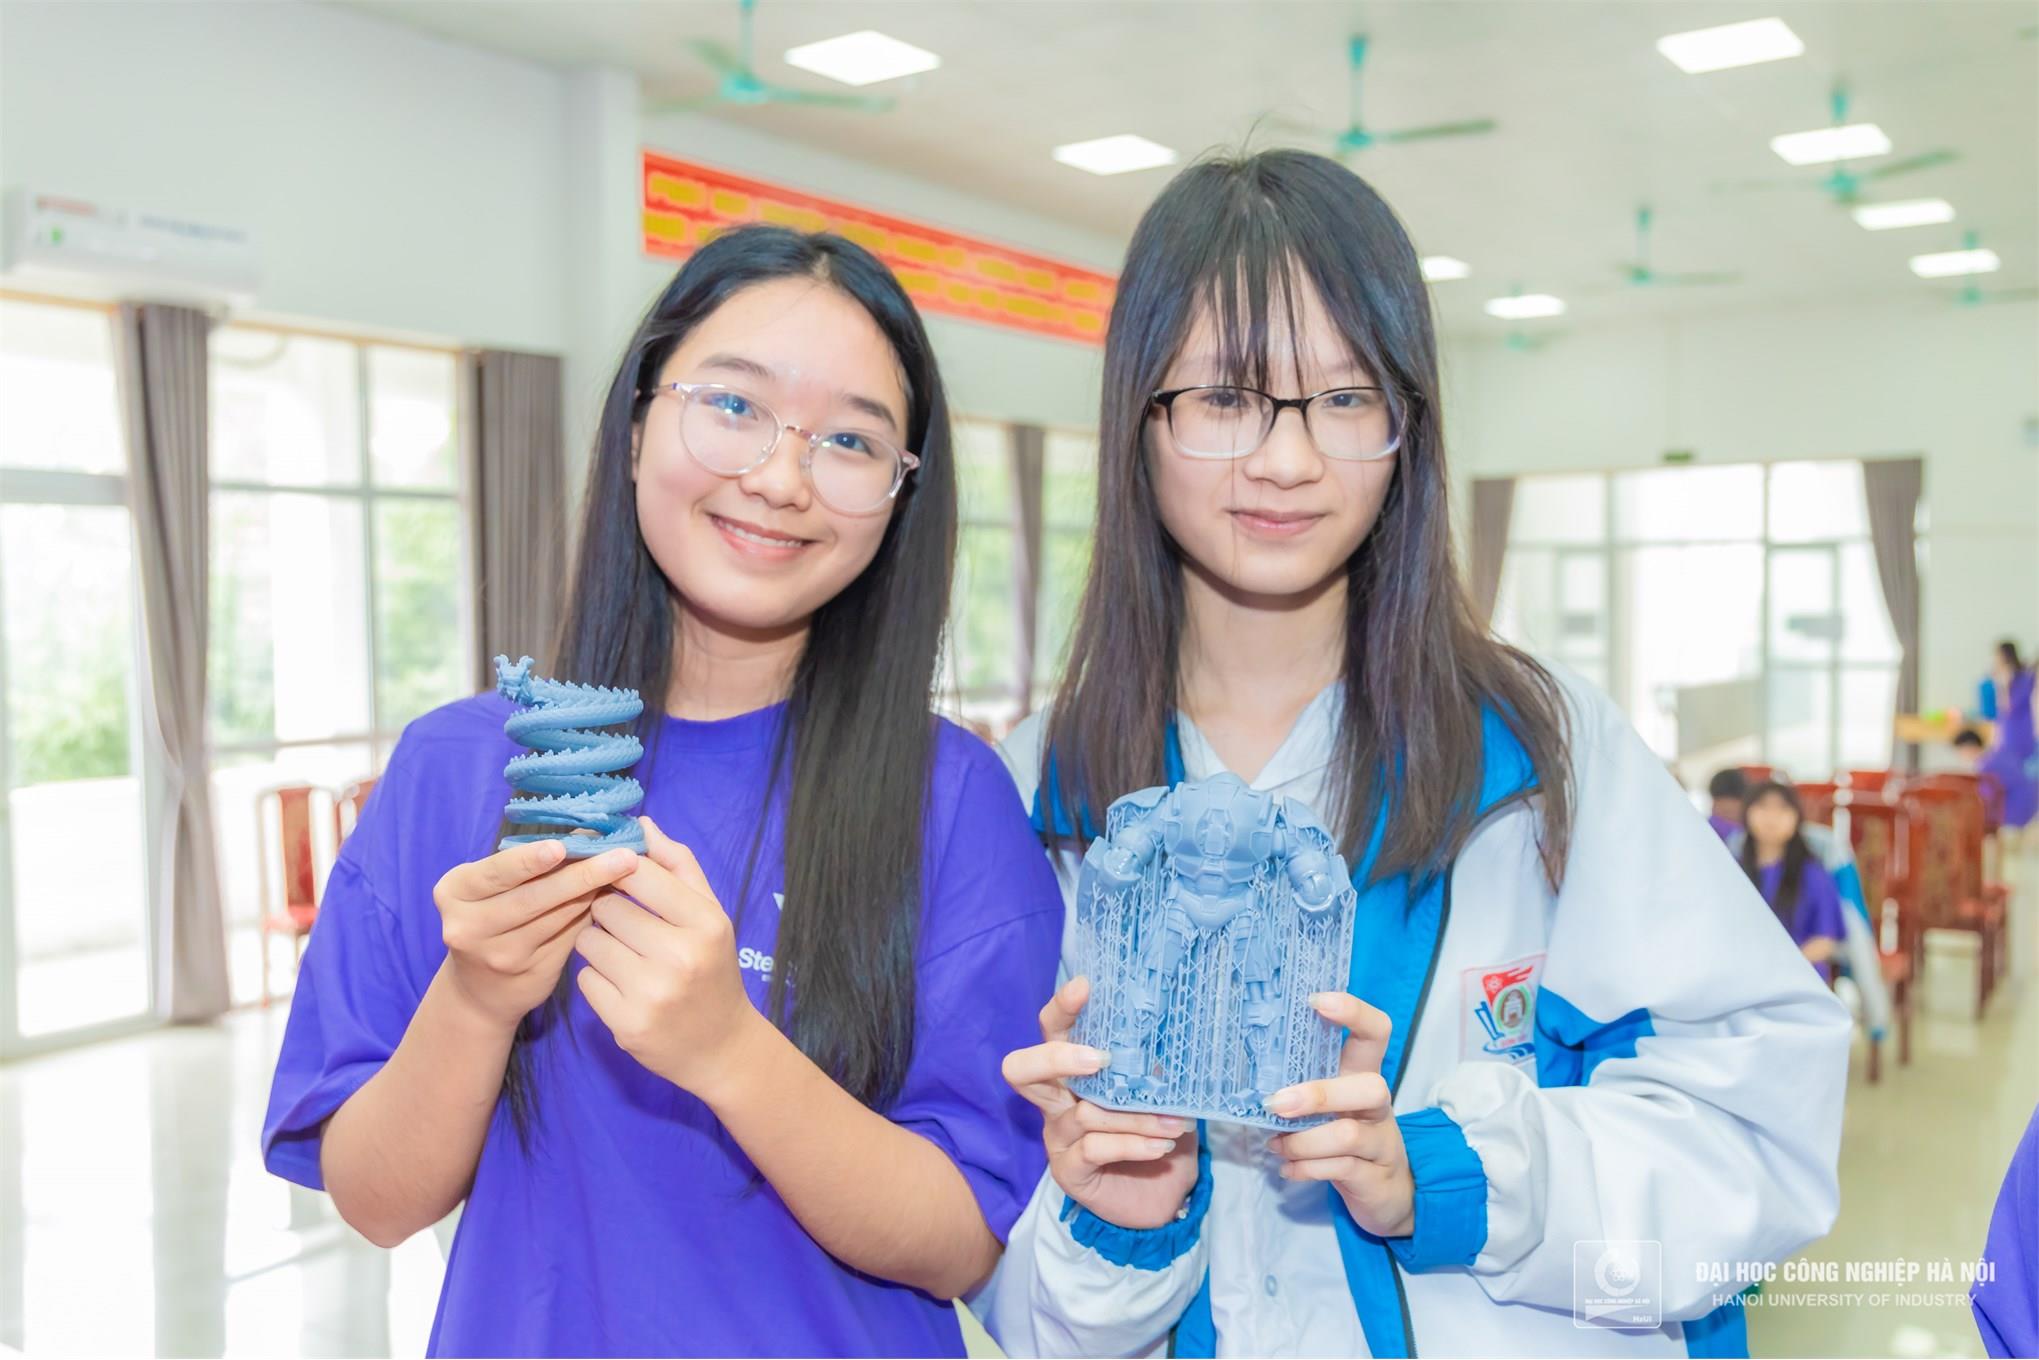 [khcncongthuong] Trường Cơ khí - Ô tô, Đại học Công nghiệp Hà Nội ươm mầm tài năng khoa học công nghệ từ giáo dục STEM